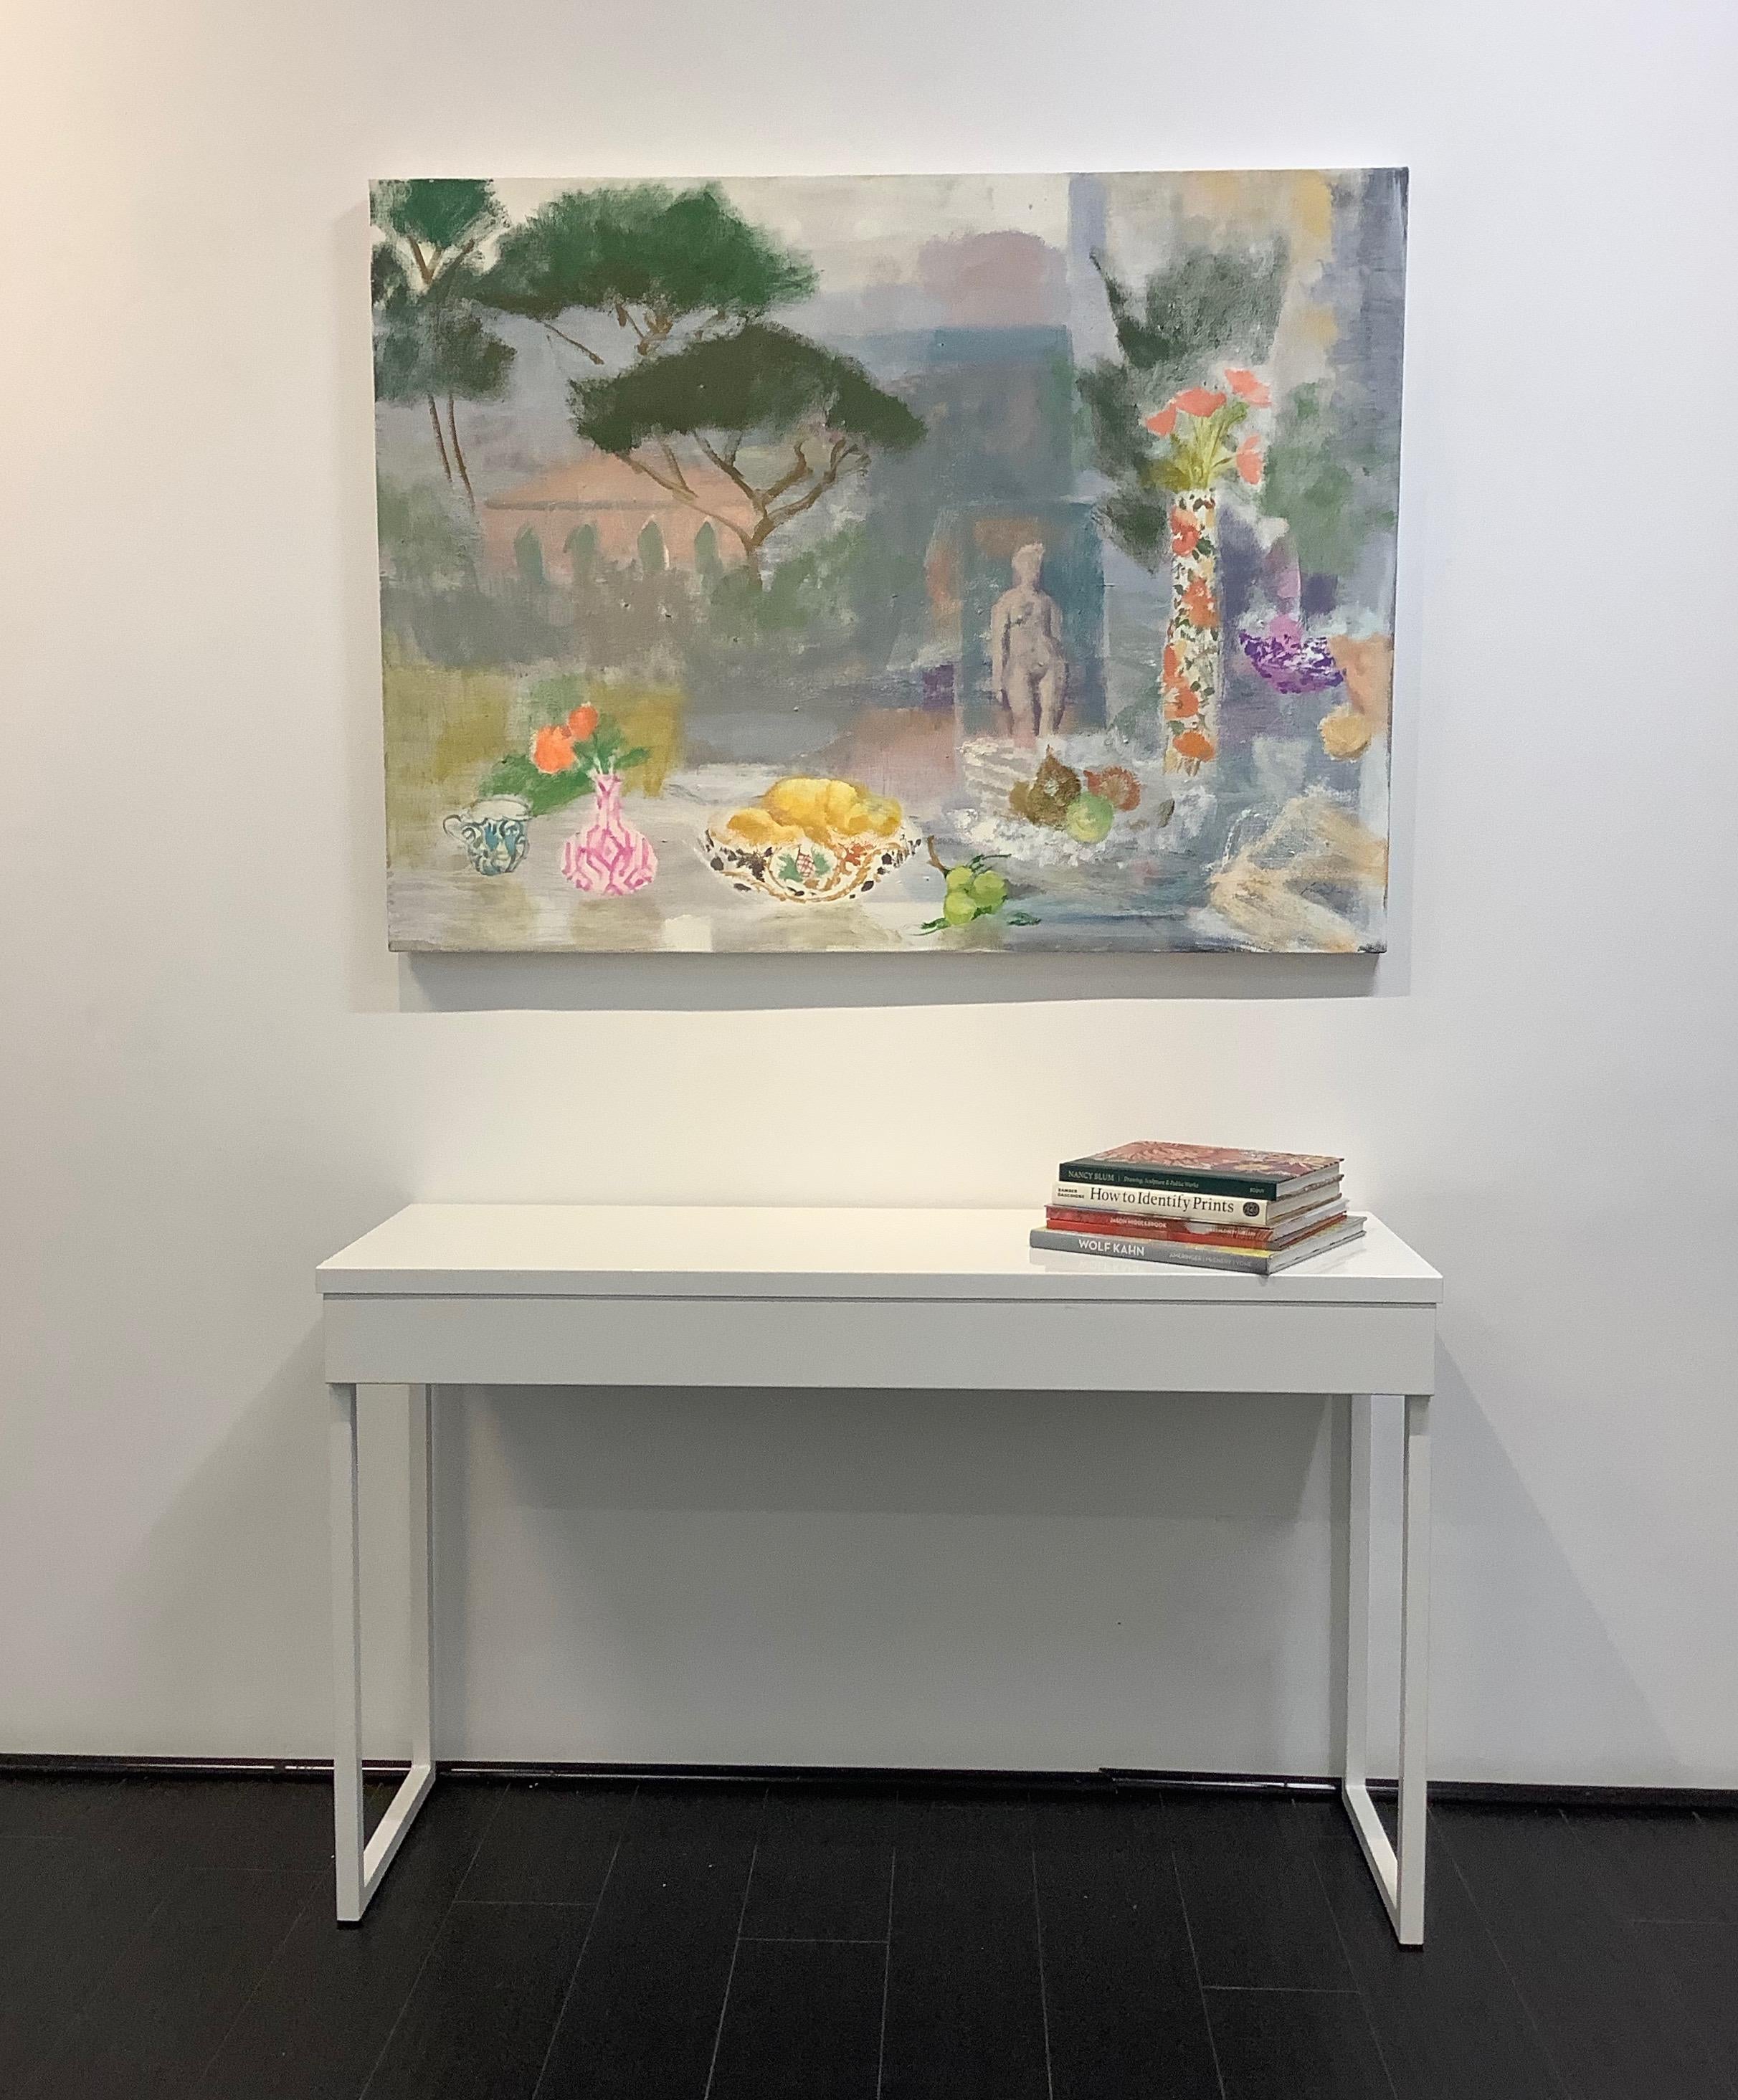 Postkartenplakat von Torcello, Obst, grüne gelbe Birnen, pfirsichfarbene Blumen, Figur, grüne Bäume (Zeitgenössisch), Painting, von Melanie Parke